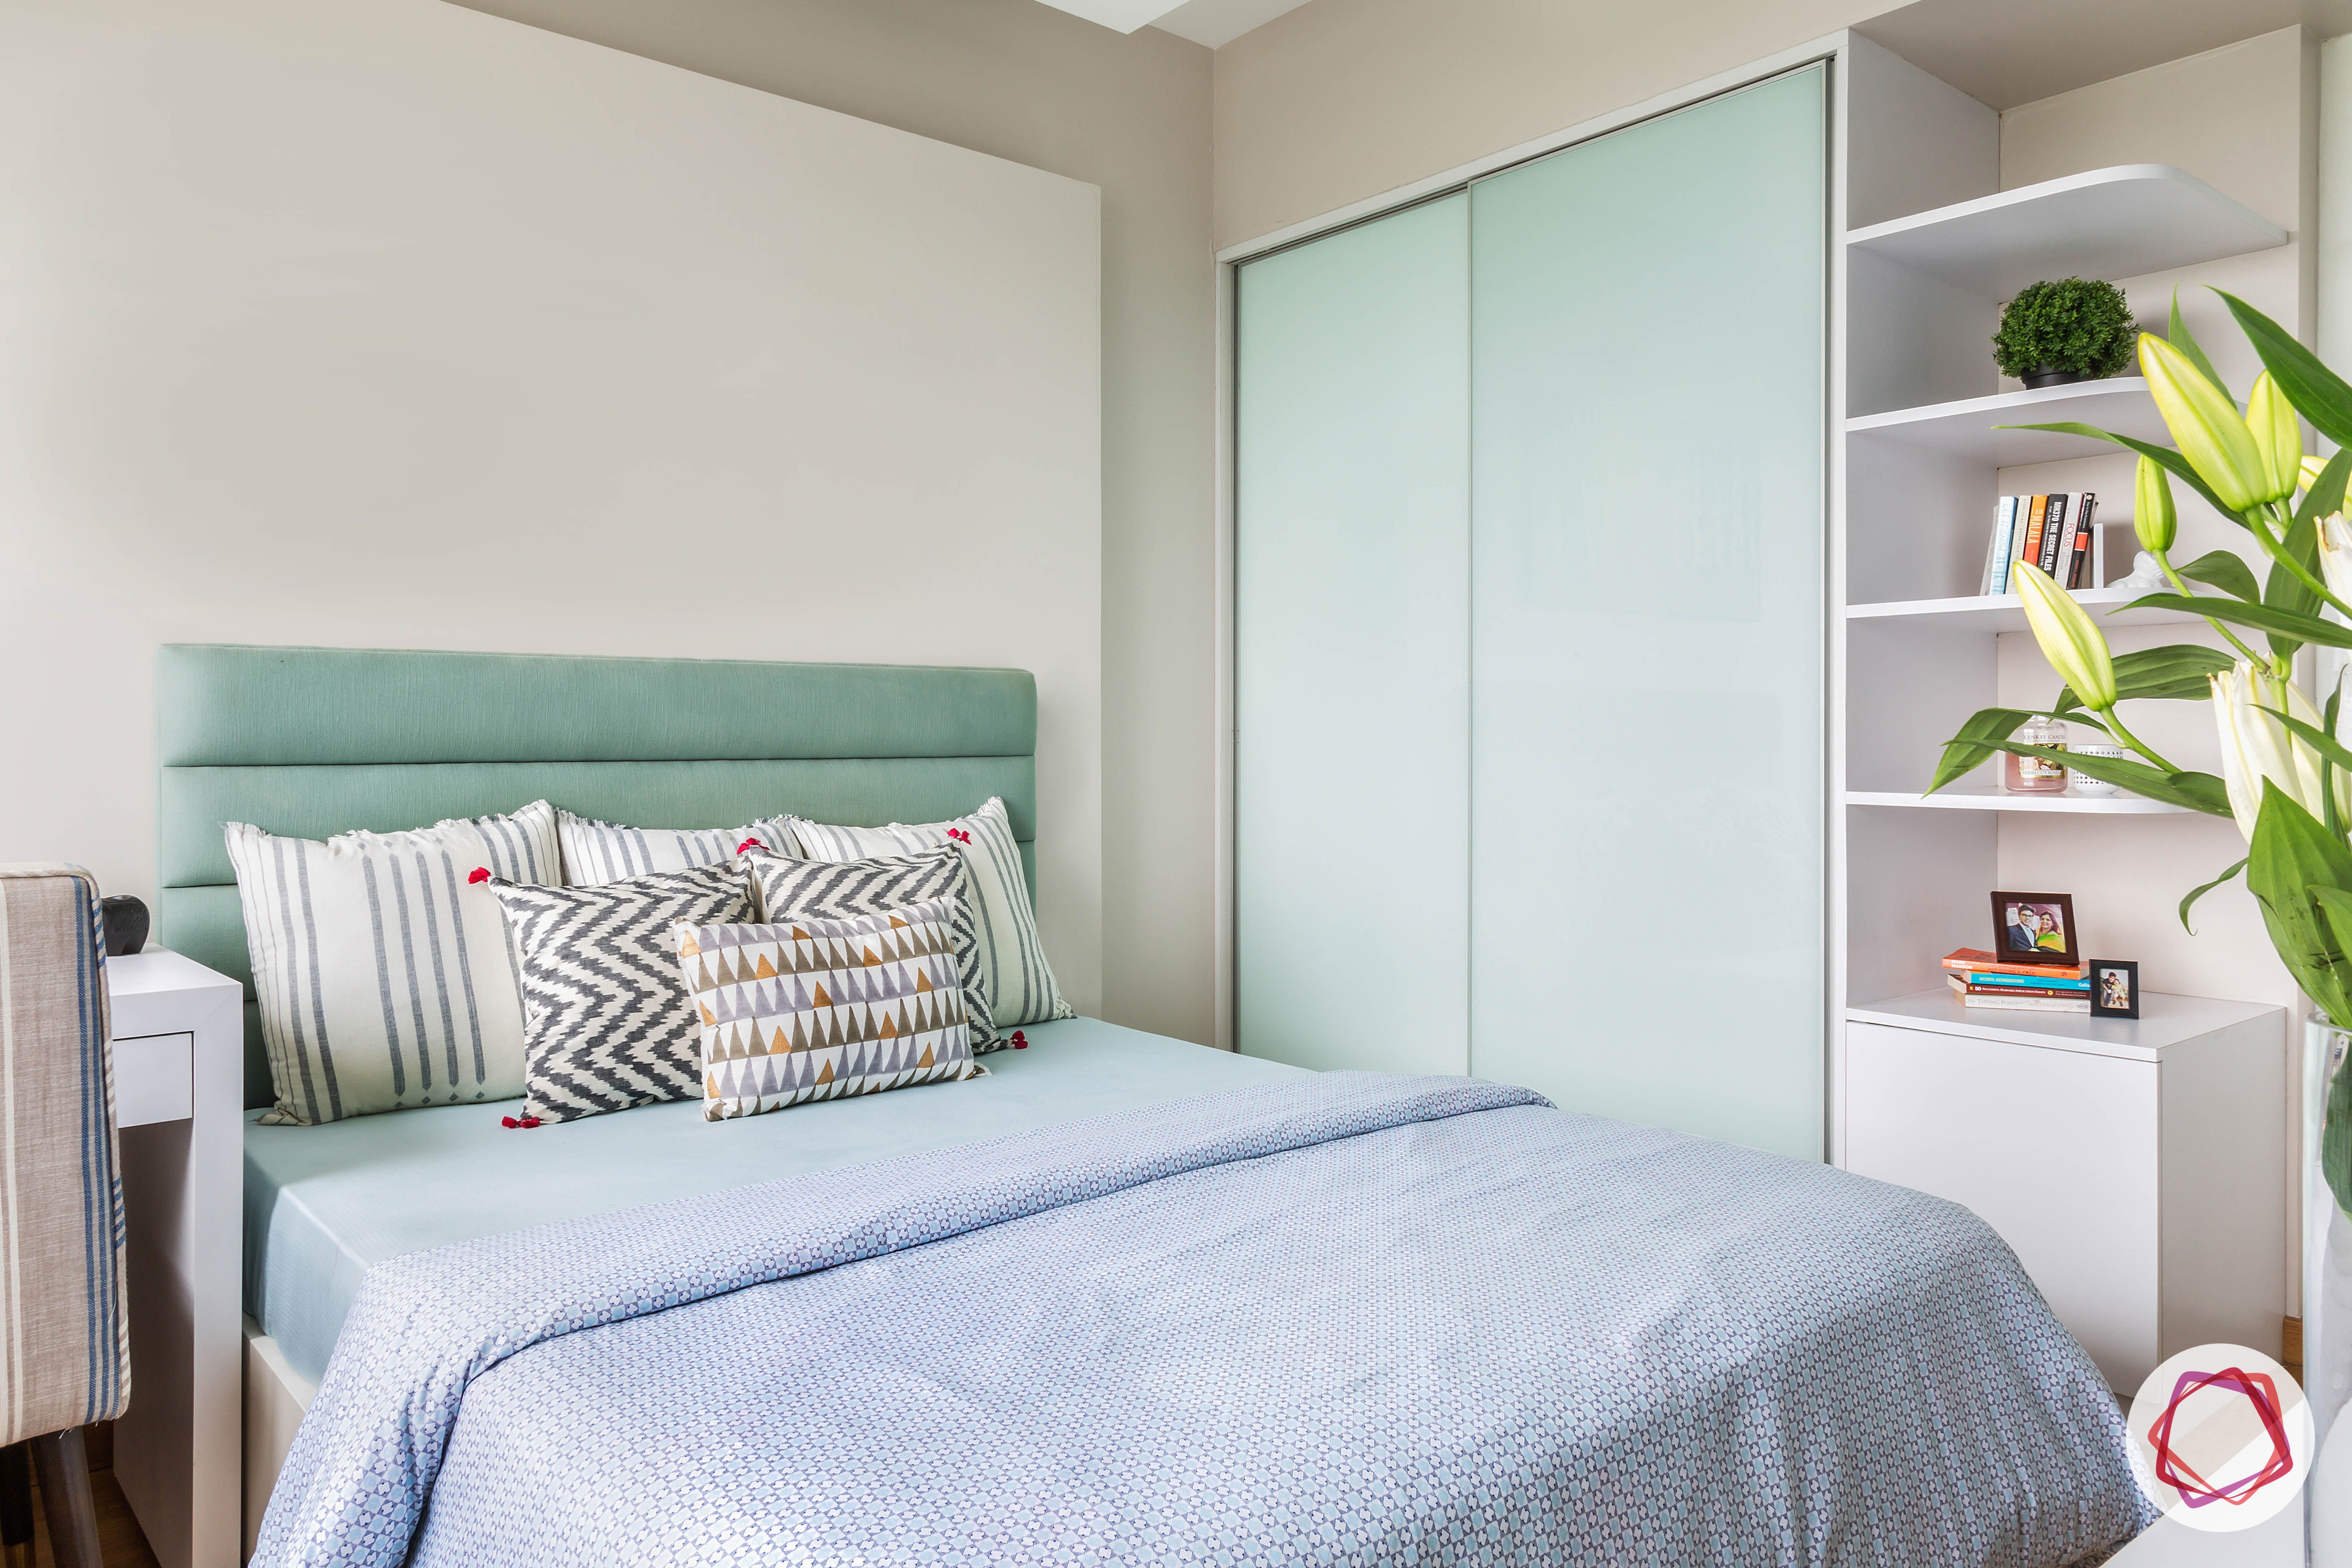 How To Choose The Perfect Bedroom Almirah Design | Meesho